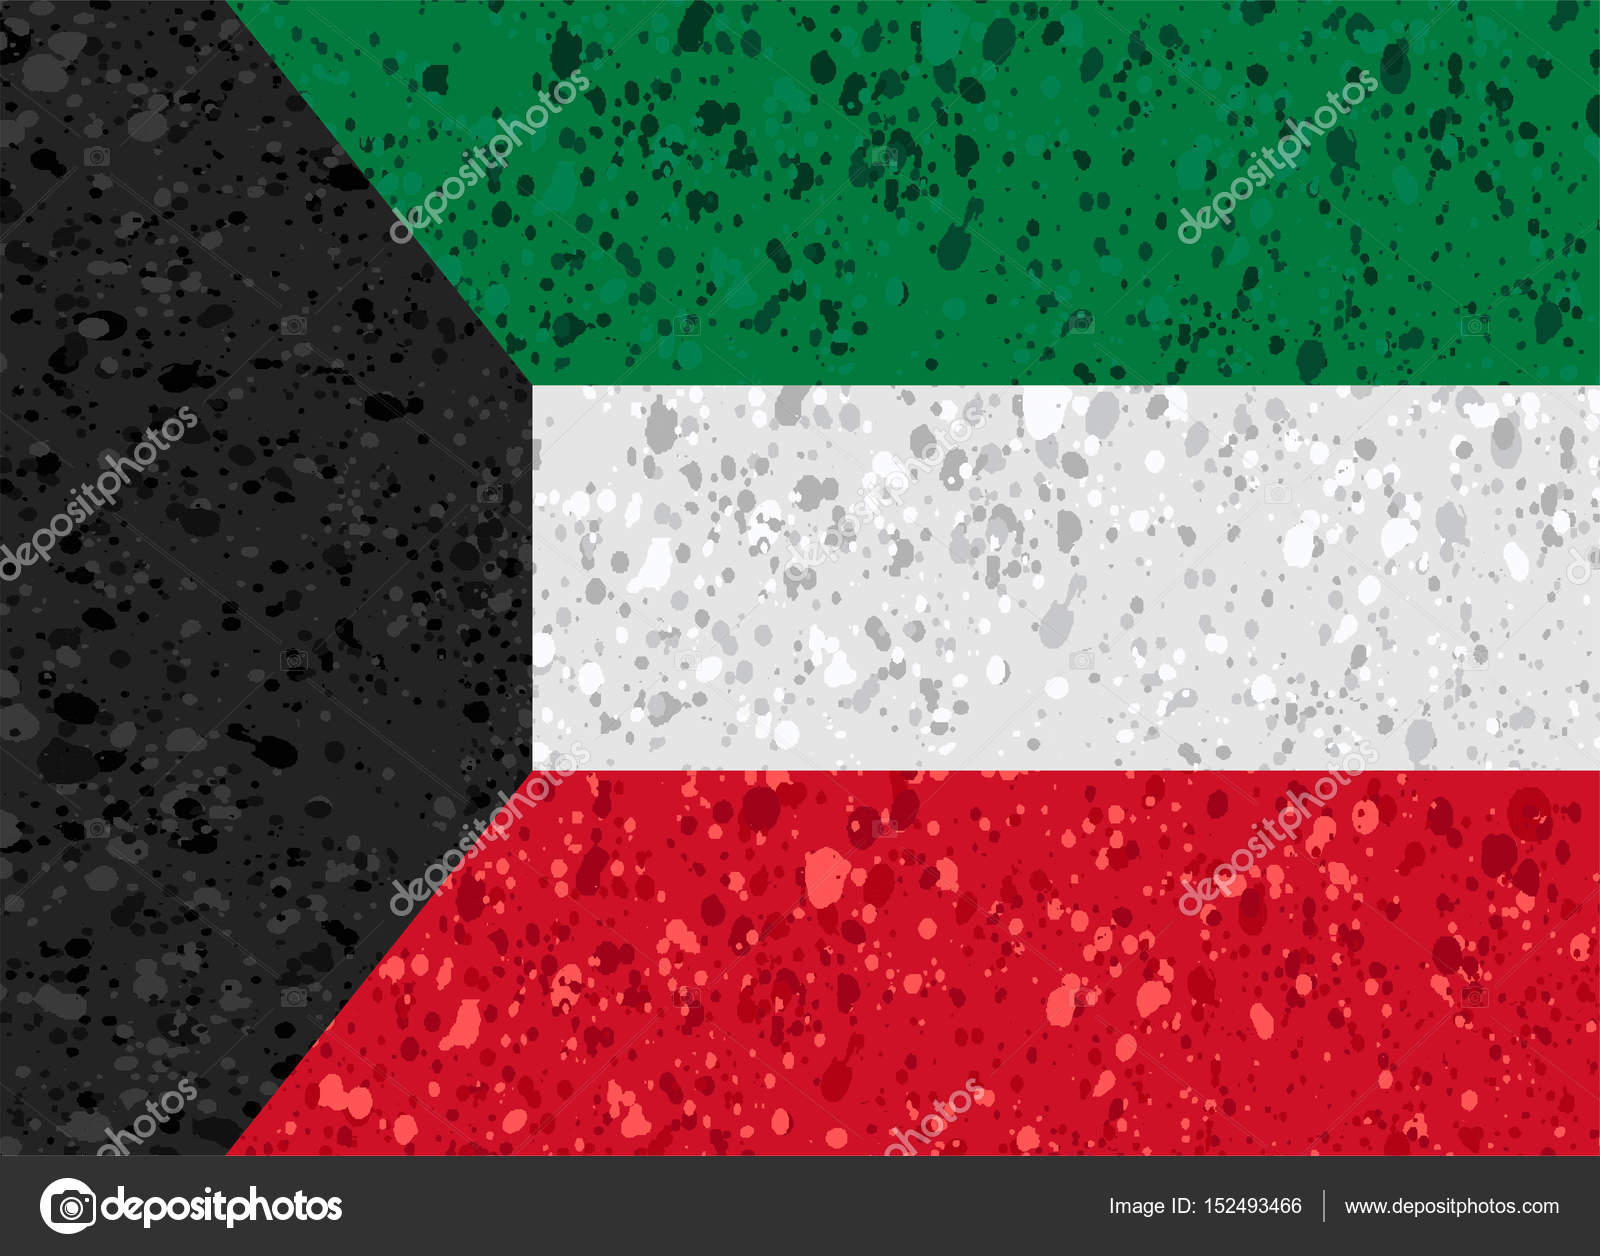 Kuwait grunge flag photo